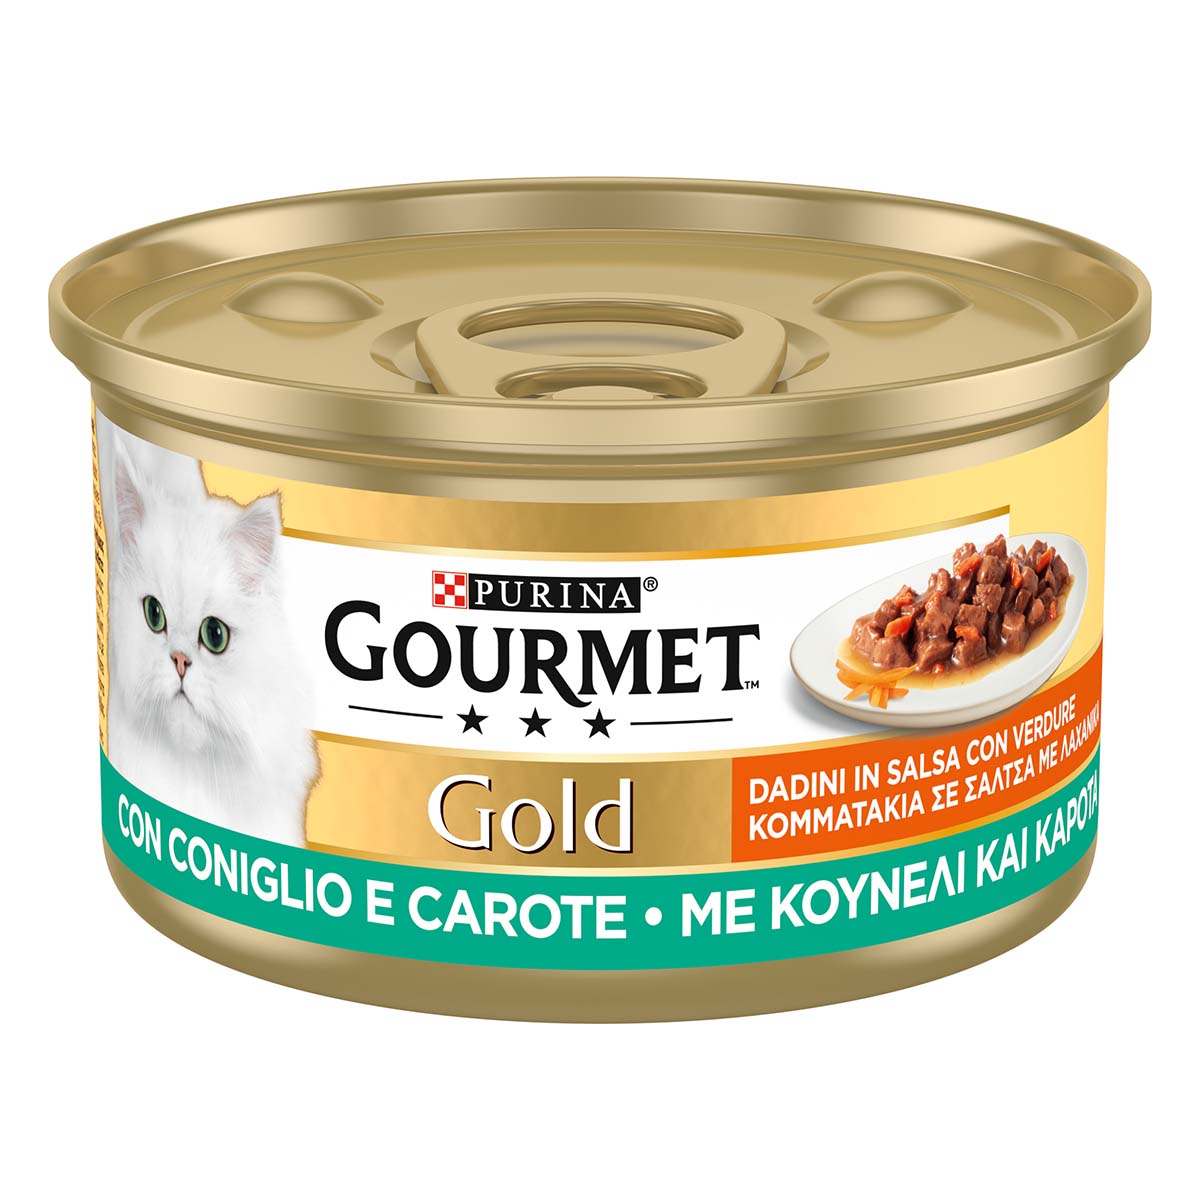 GOURMET GOLD Dadini con Coniglio e Carote, in salsa con verdure